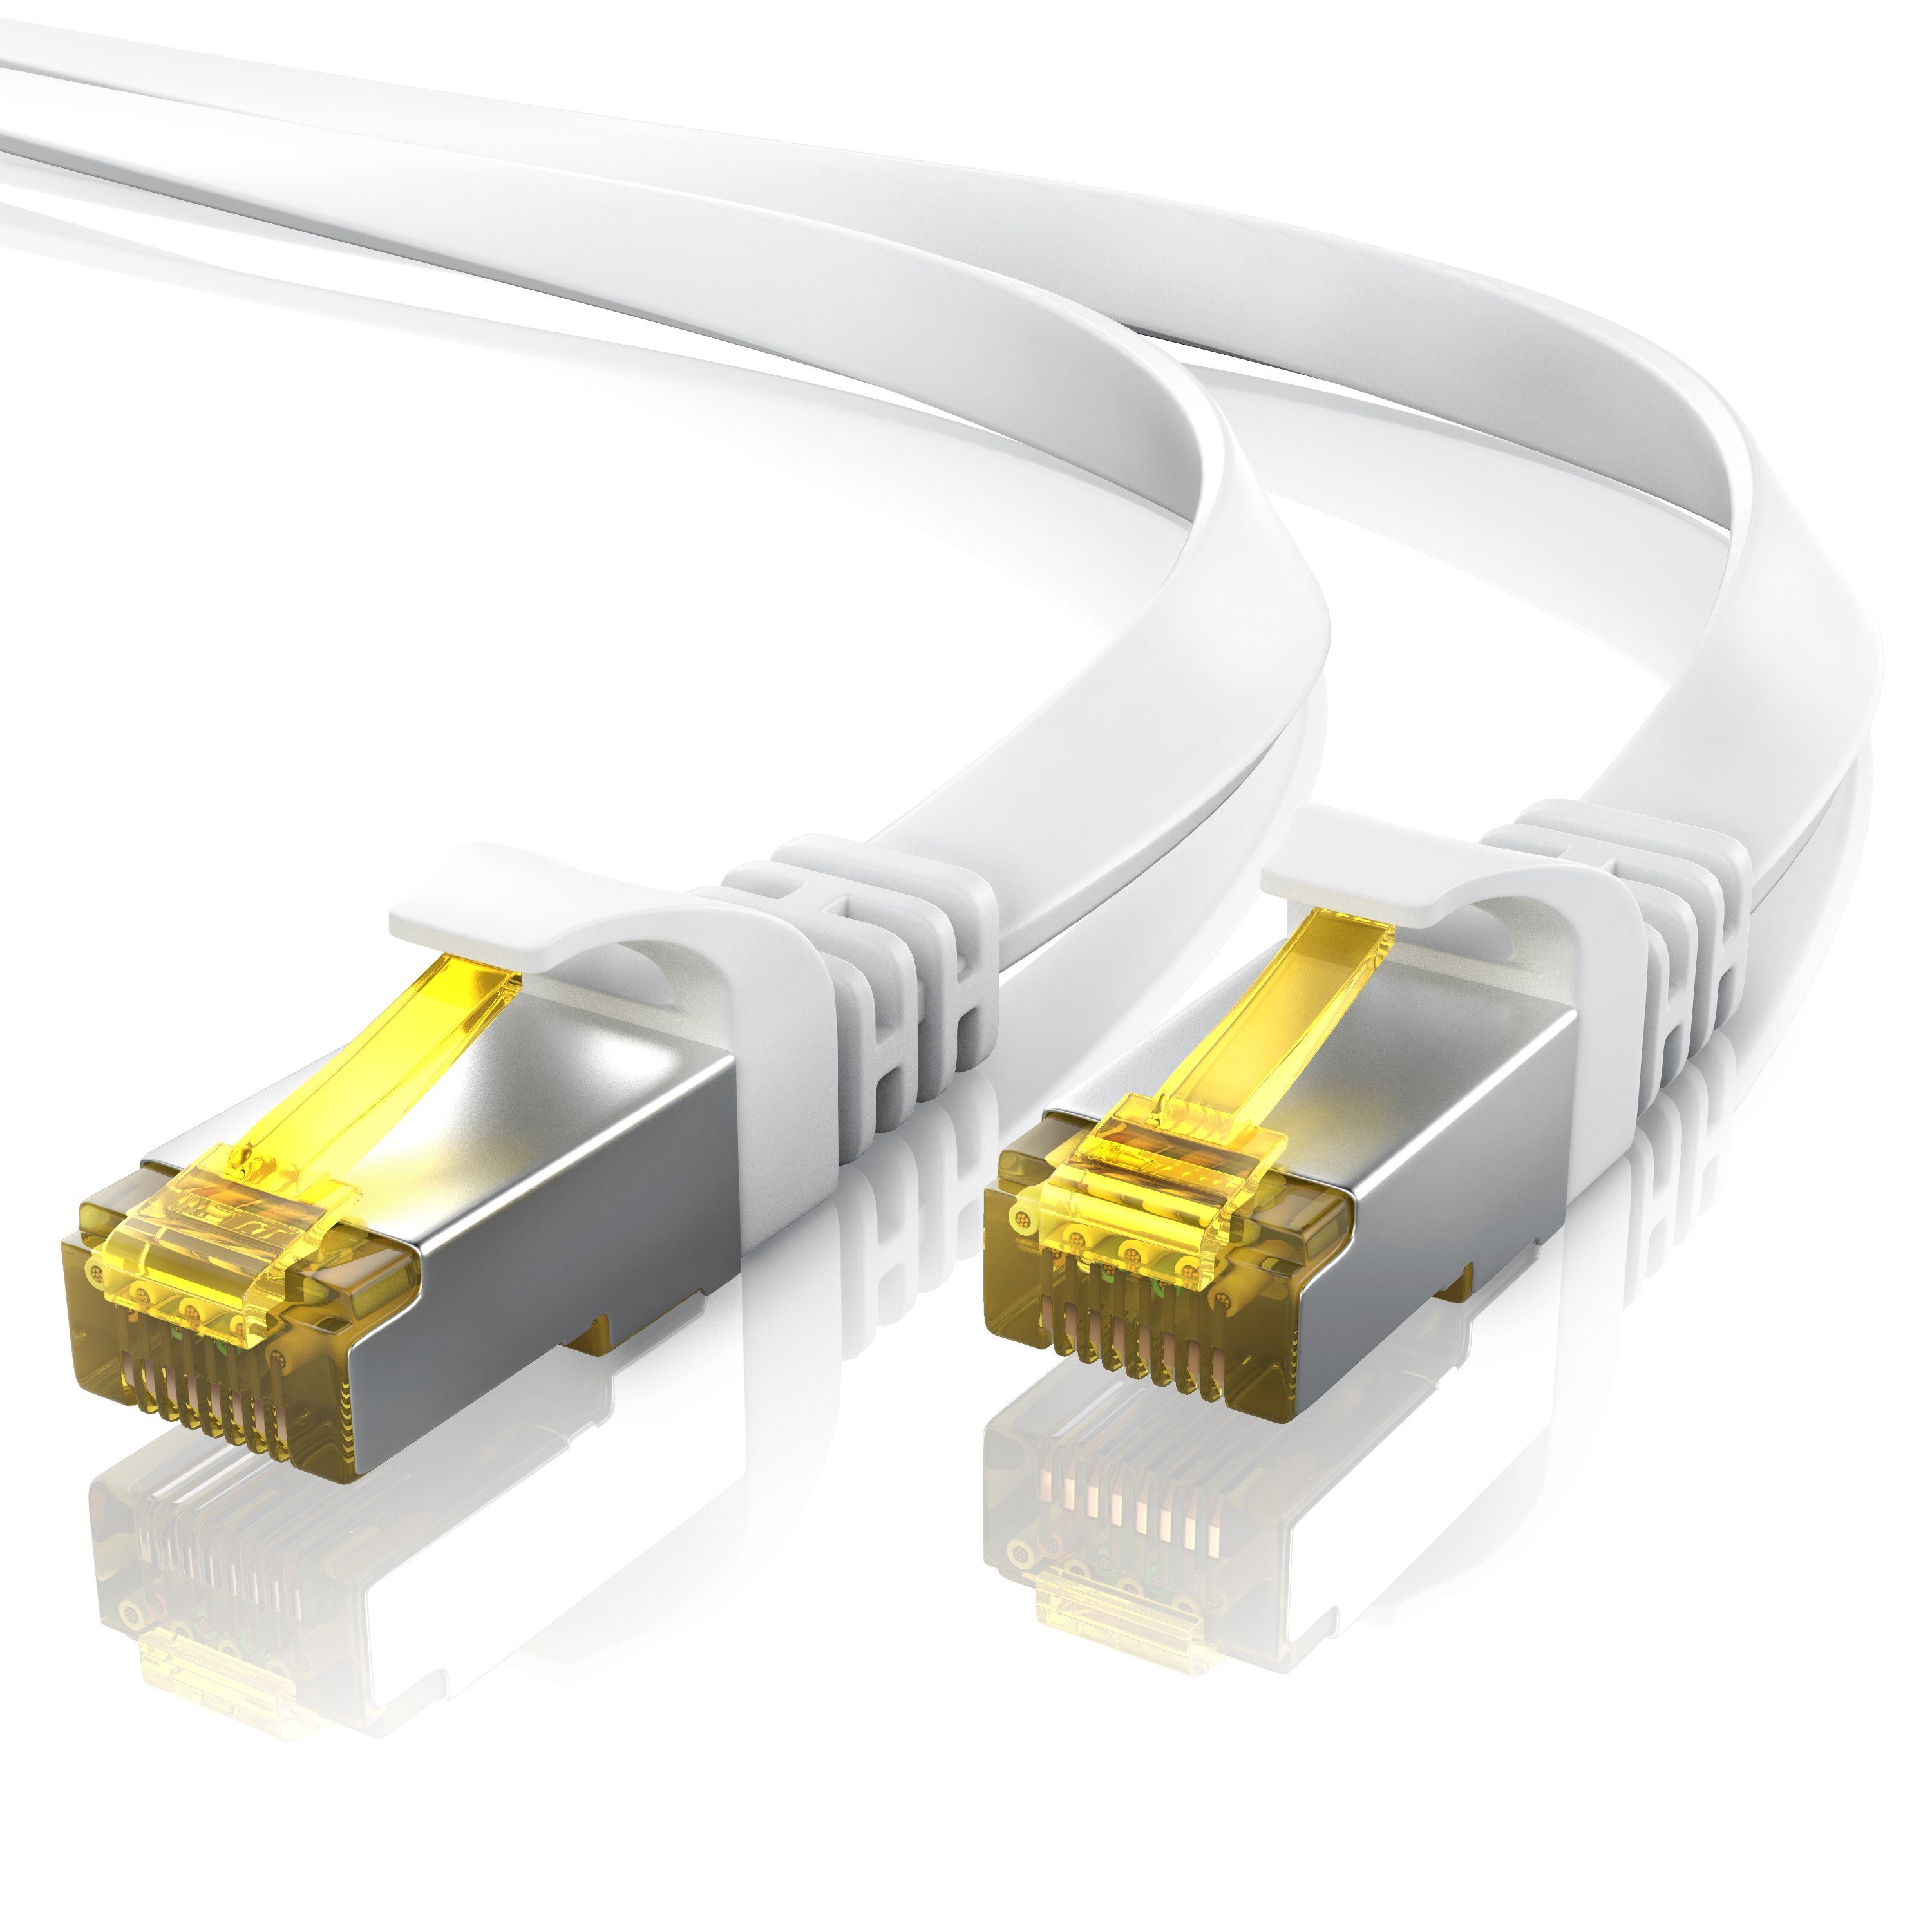 Primewire LAN-Kabel, CAT.7, RJ-45 (Ethernet) (25 cm), CAT 7 Flachband Gigabit Netzwerkkabel 10 Gbit/s Patchkabel flach 0,25m